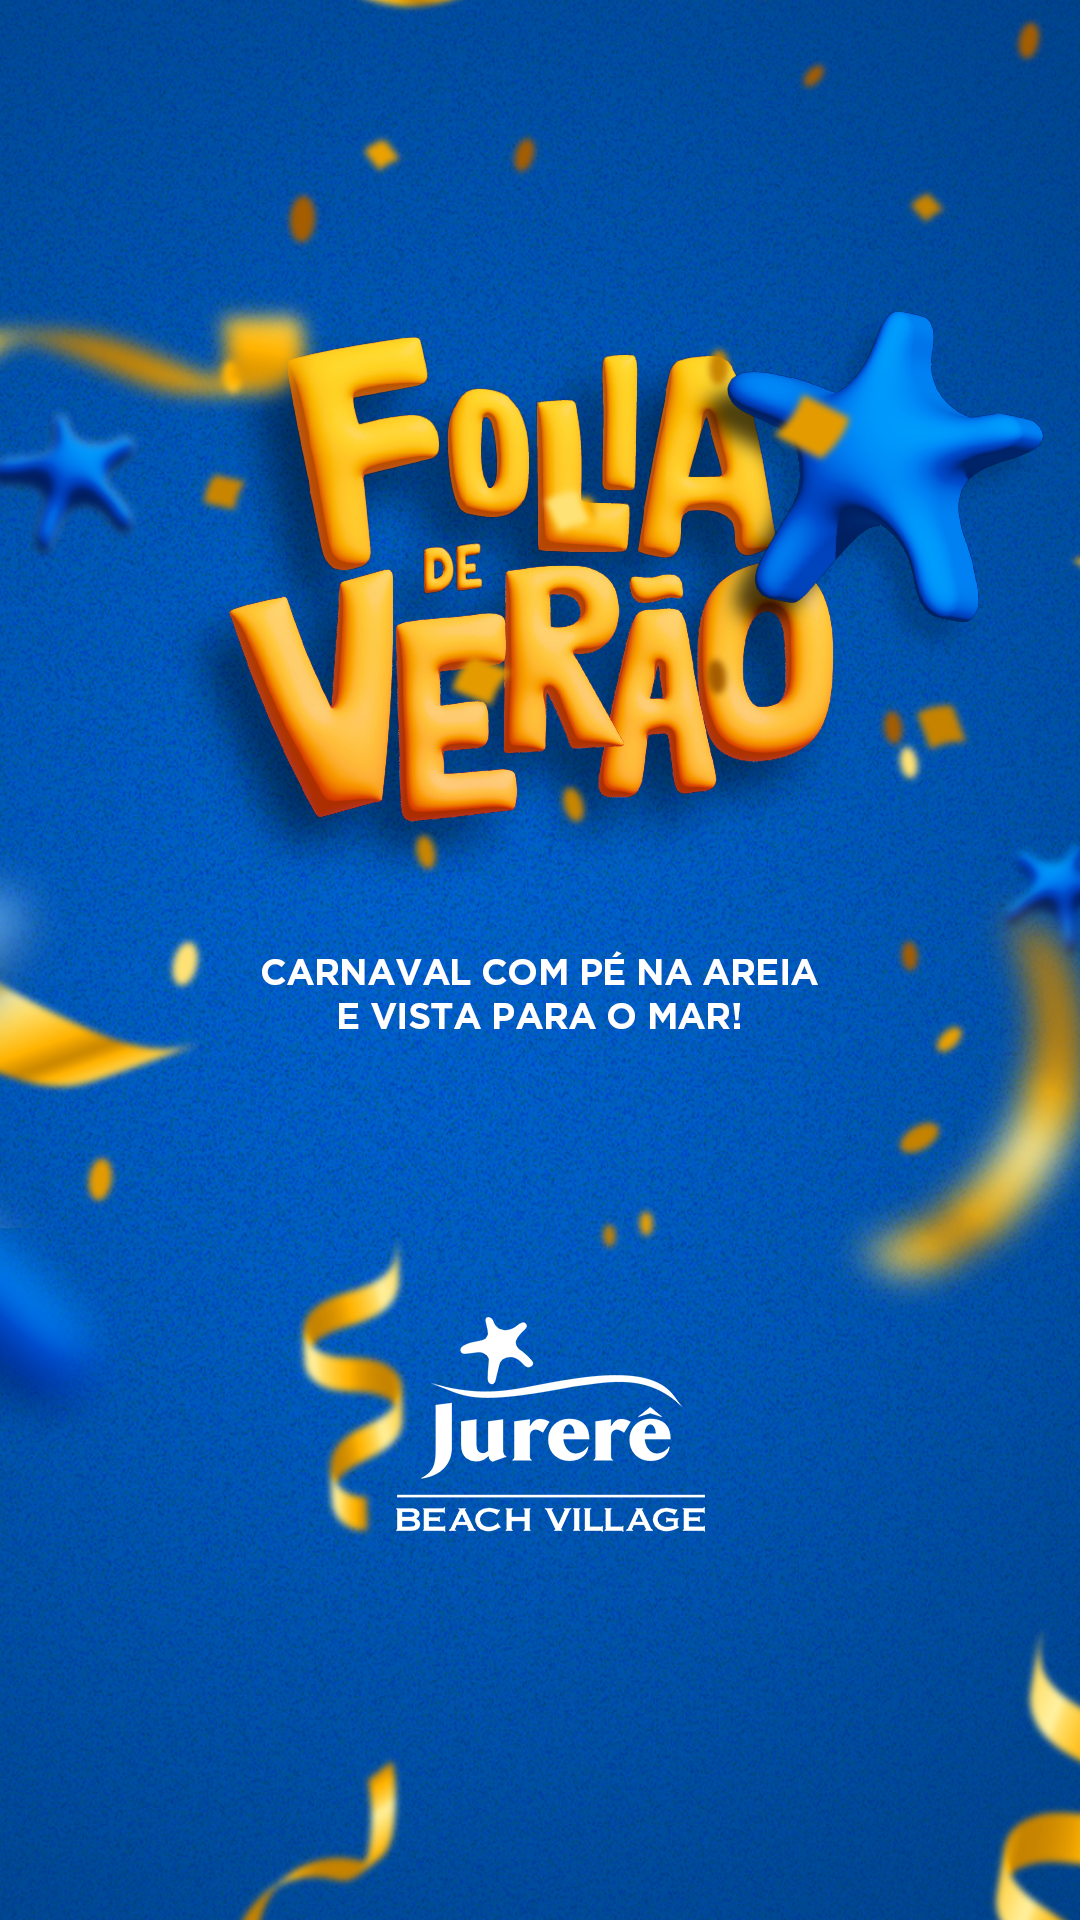 Carnaval Jurerê Beach Village